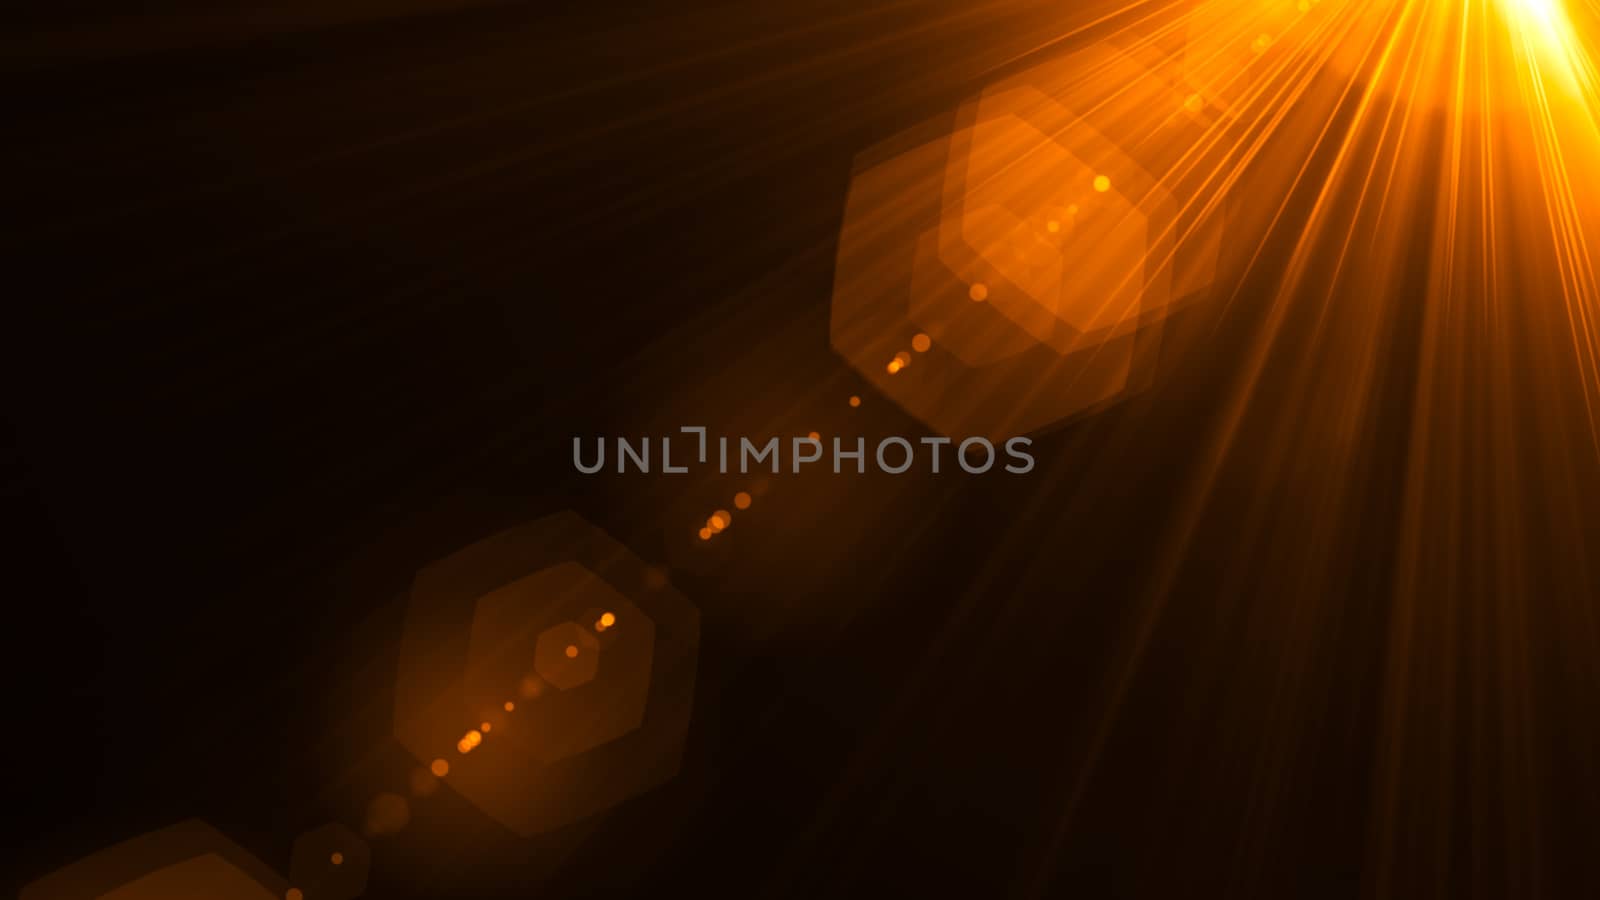 Digital lens flare in black bacground. 3d rendering